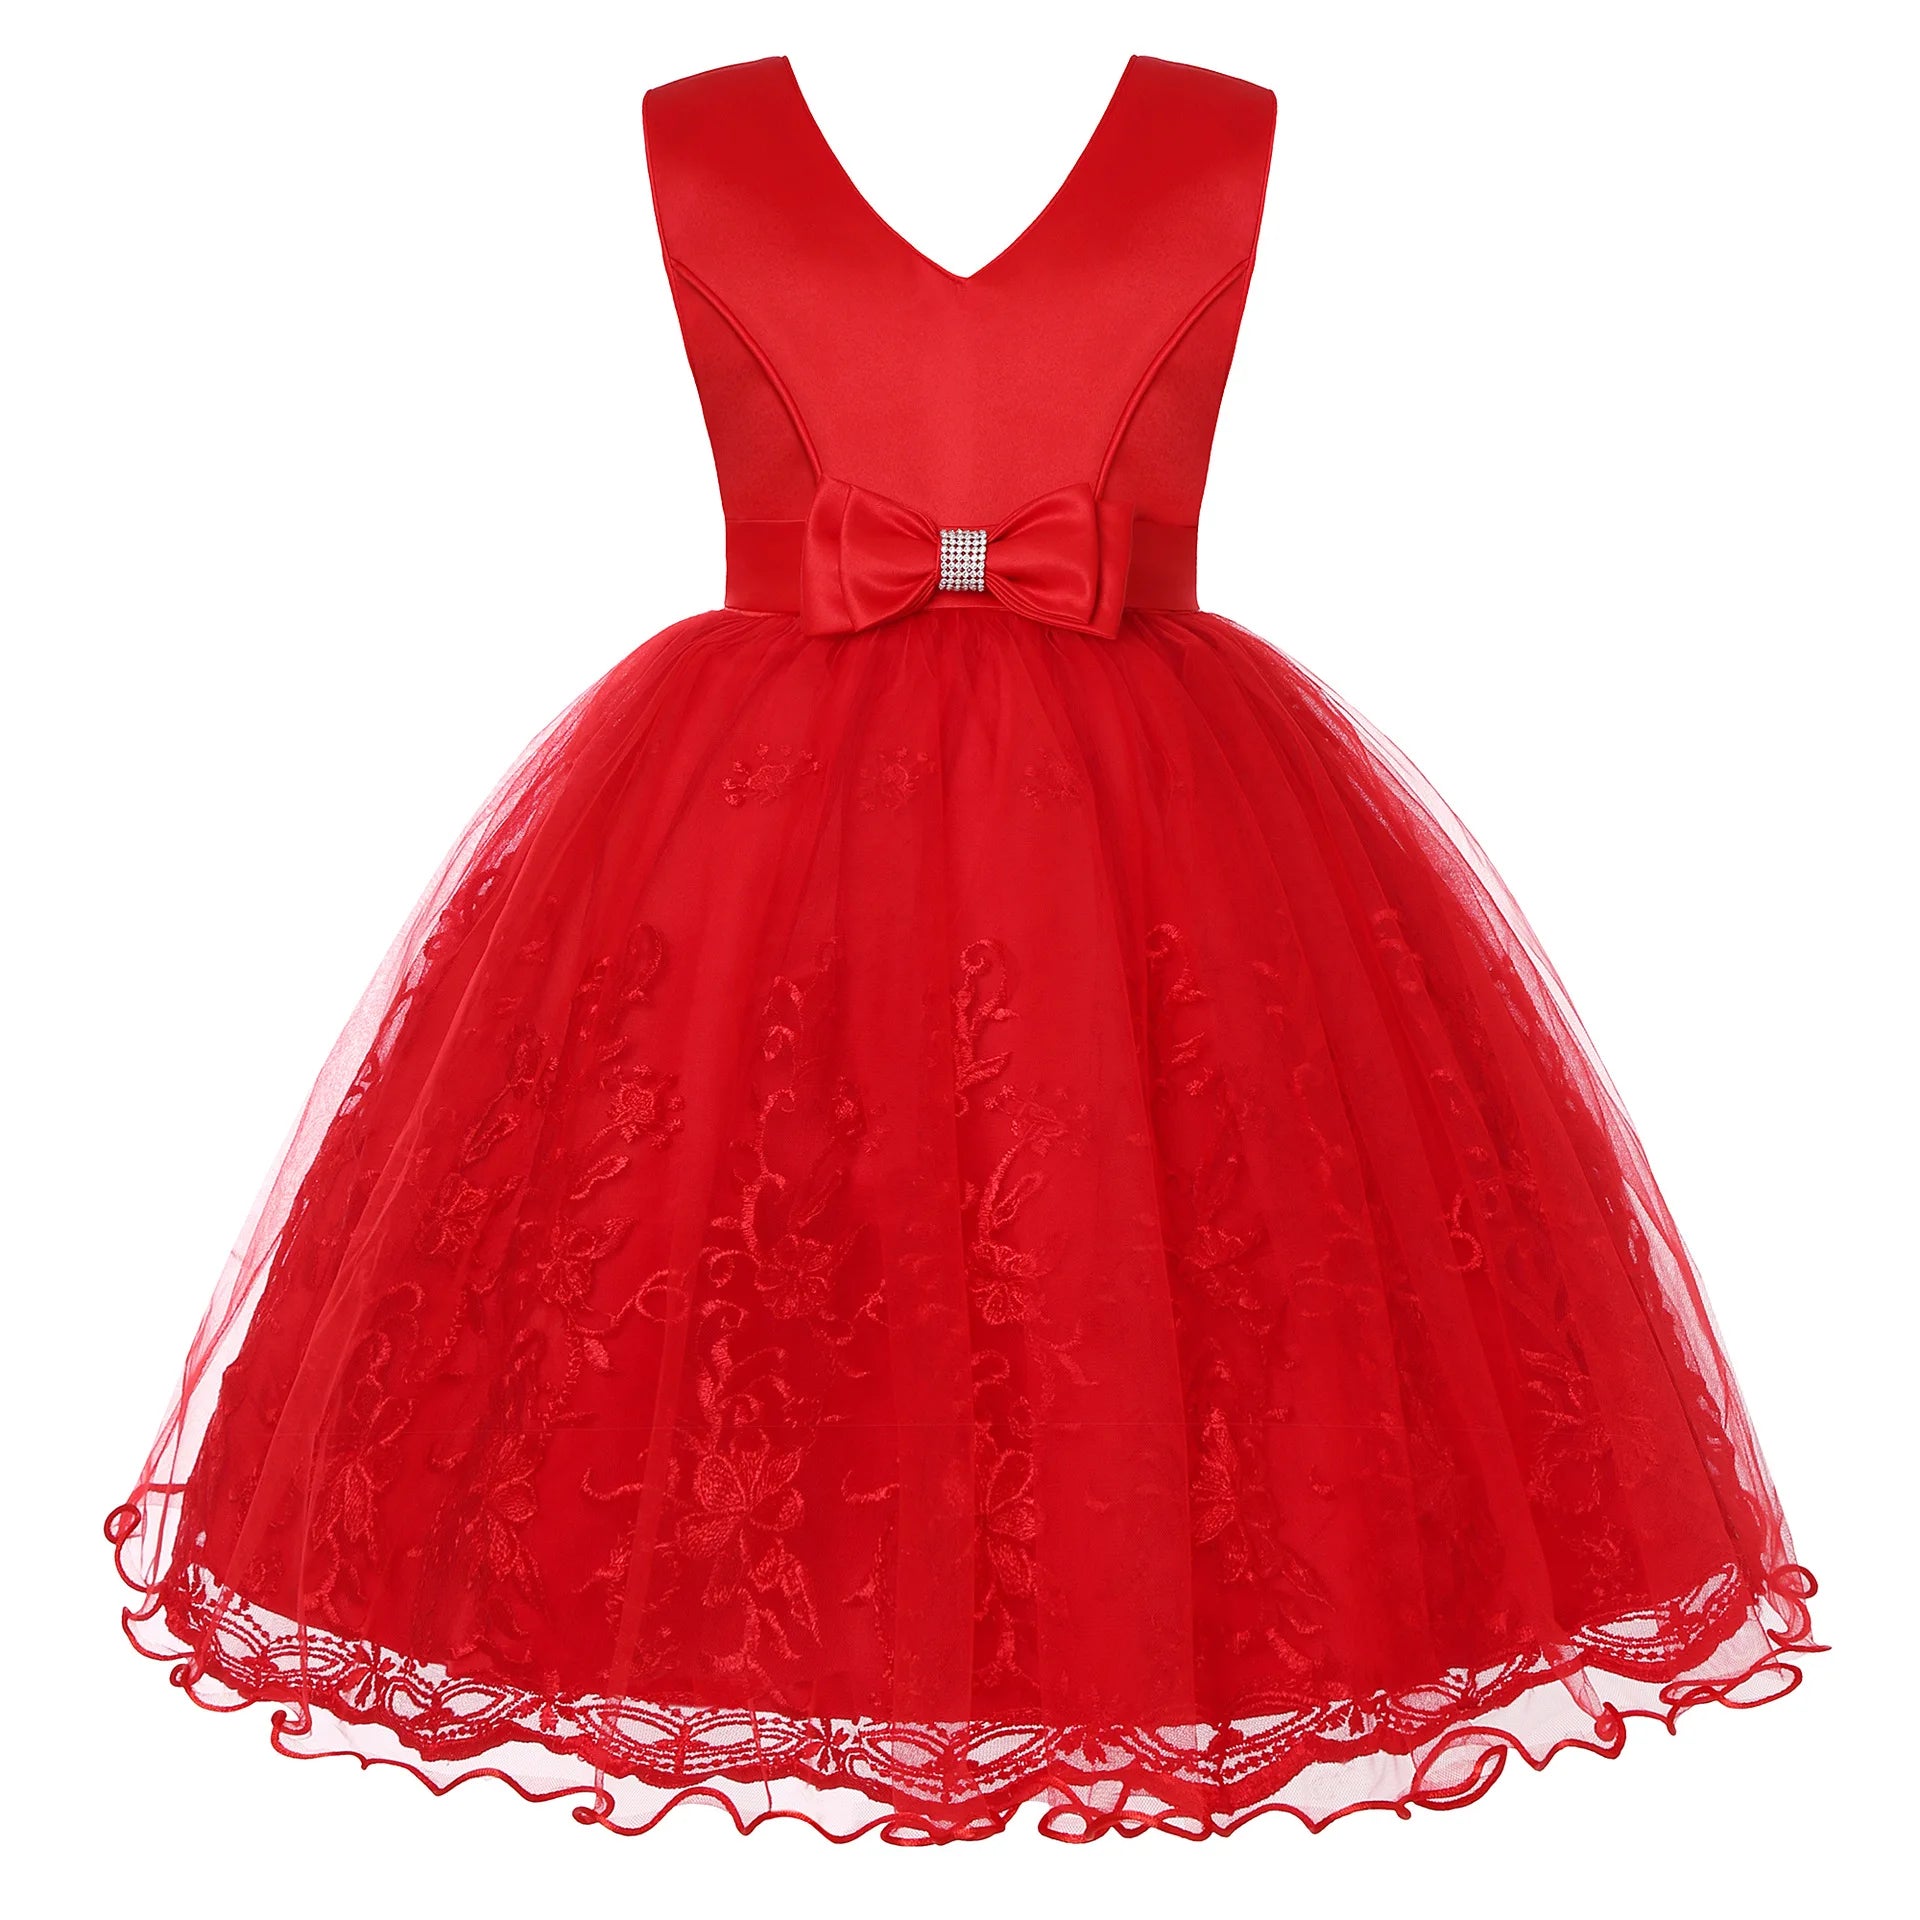 Causal Baby Girl Tutu Princess Dress Red by Baby Minaj Cruz